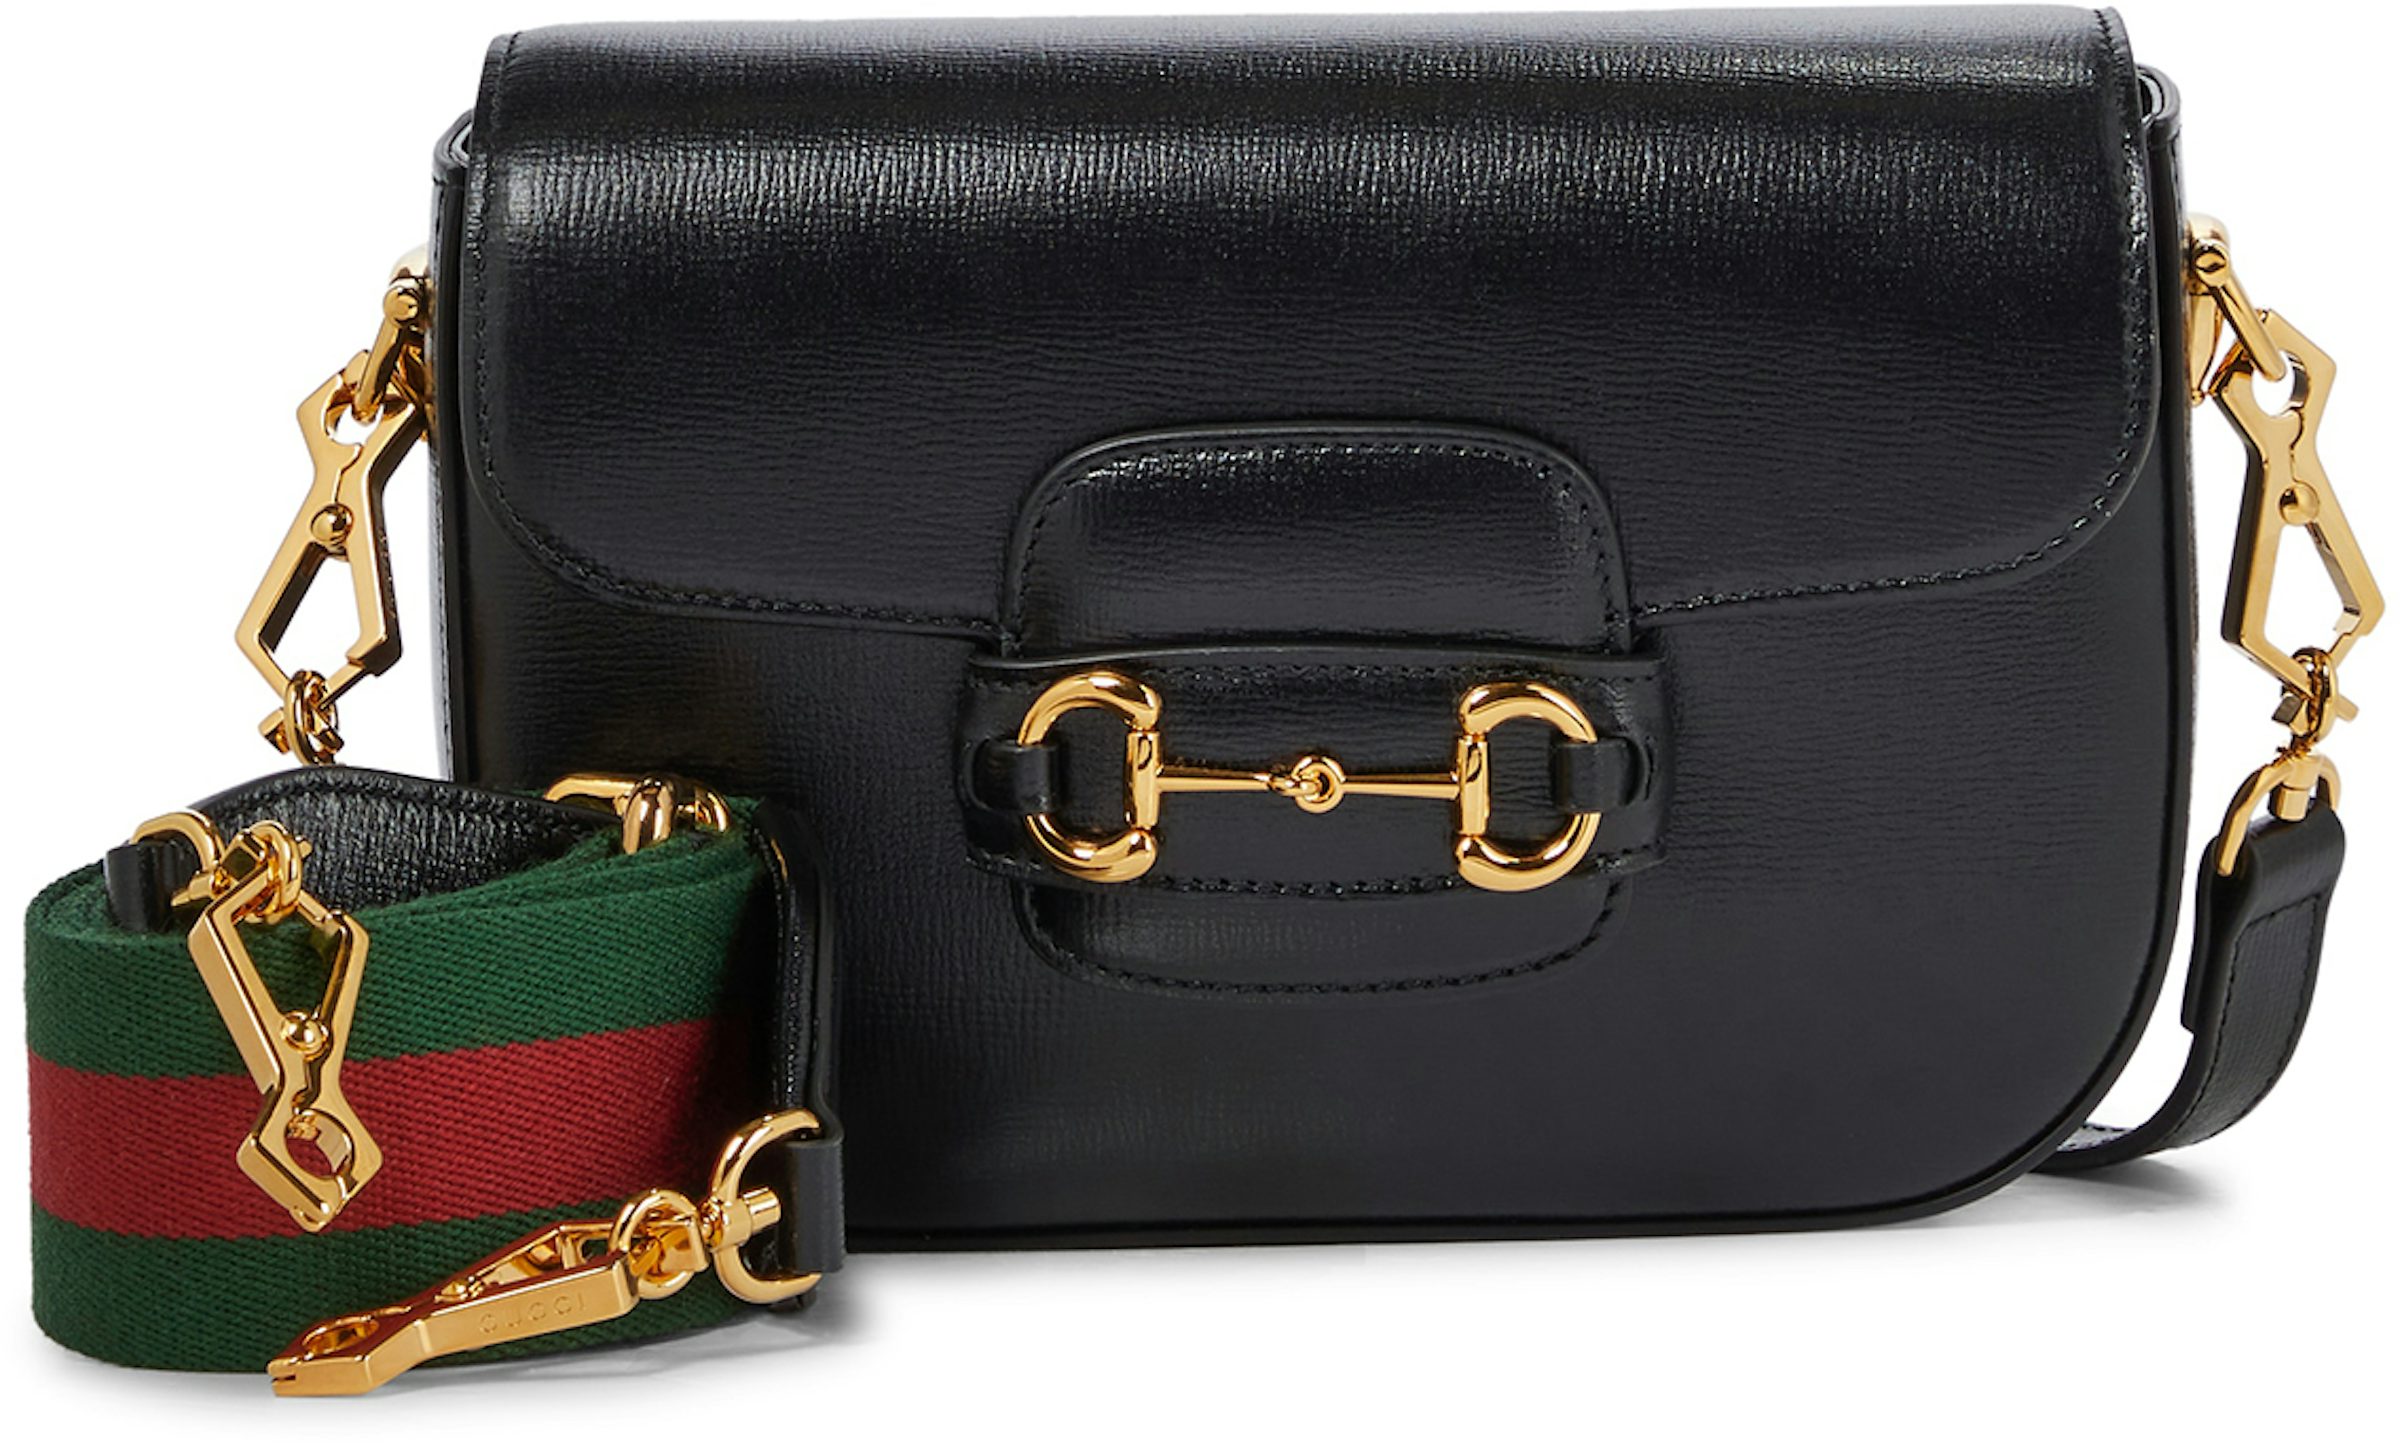 Gucci 1955 Horsebit Mini Bag - Black